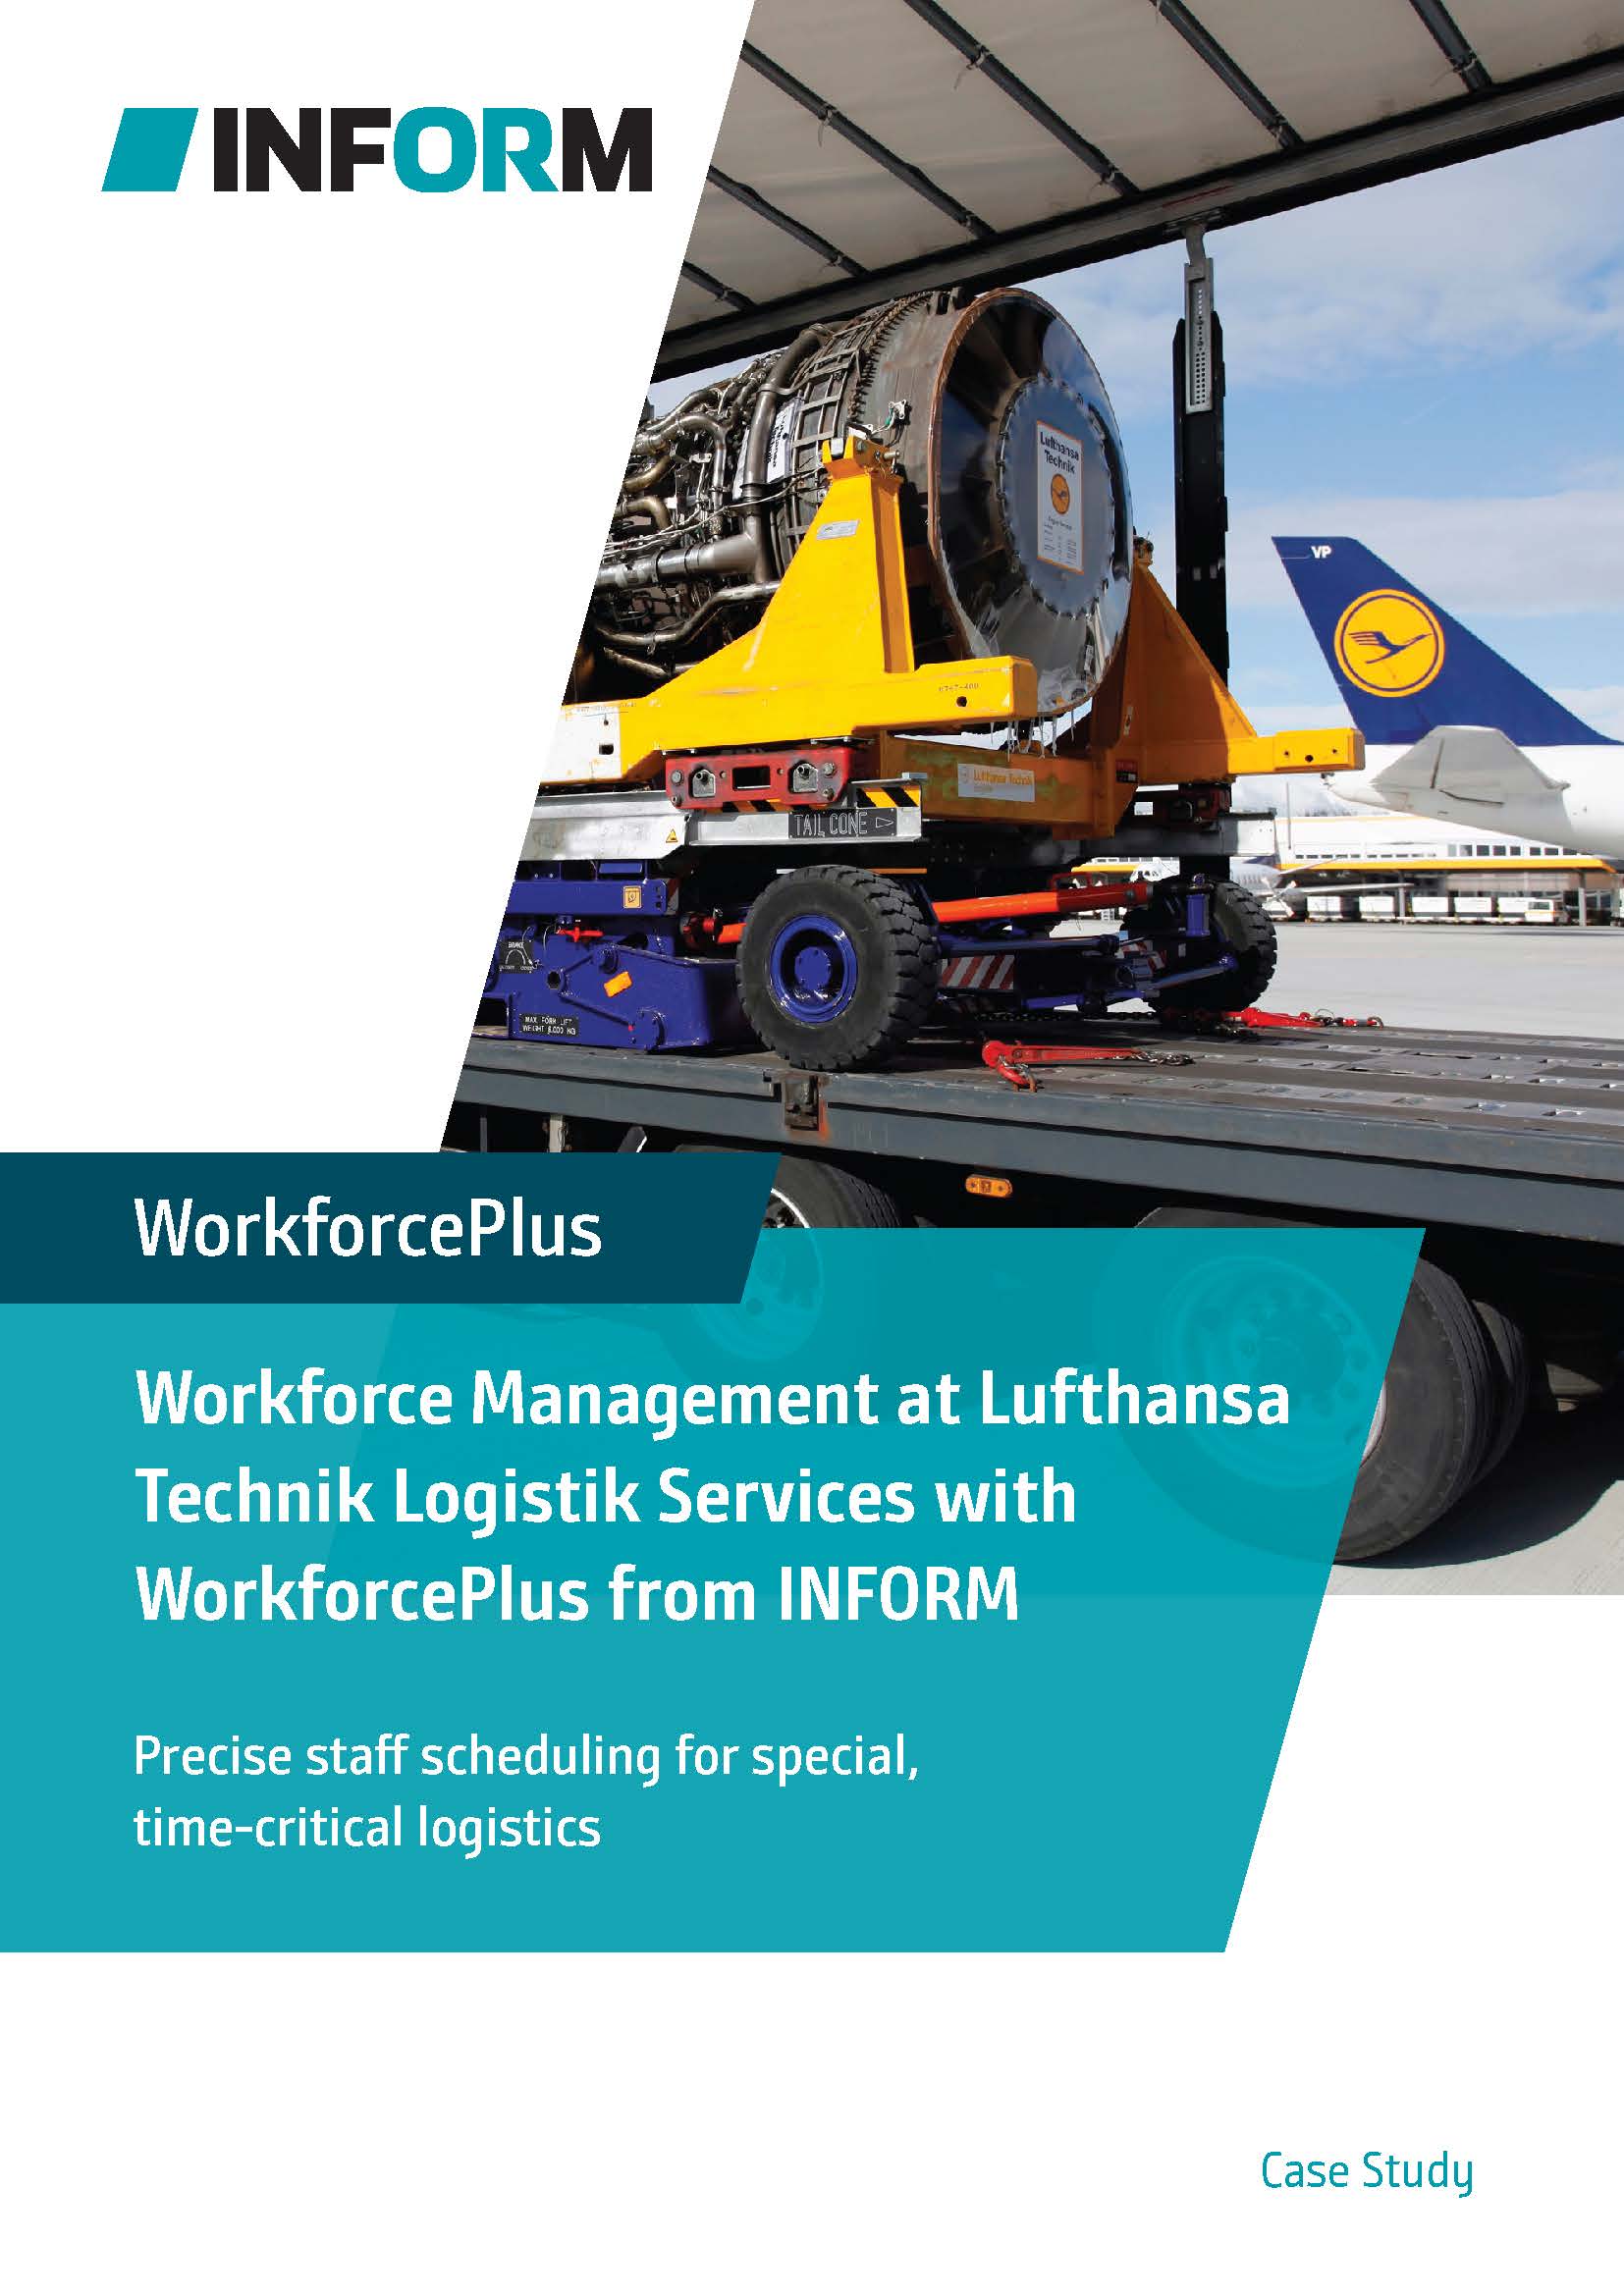 WorkforcePlus Case Study: workforce management at Lufthansa Technik Logistik Services